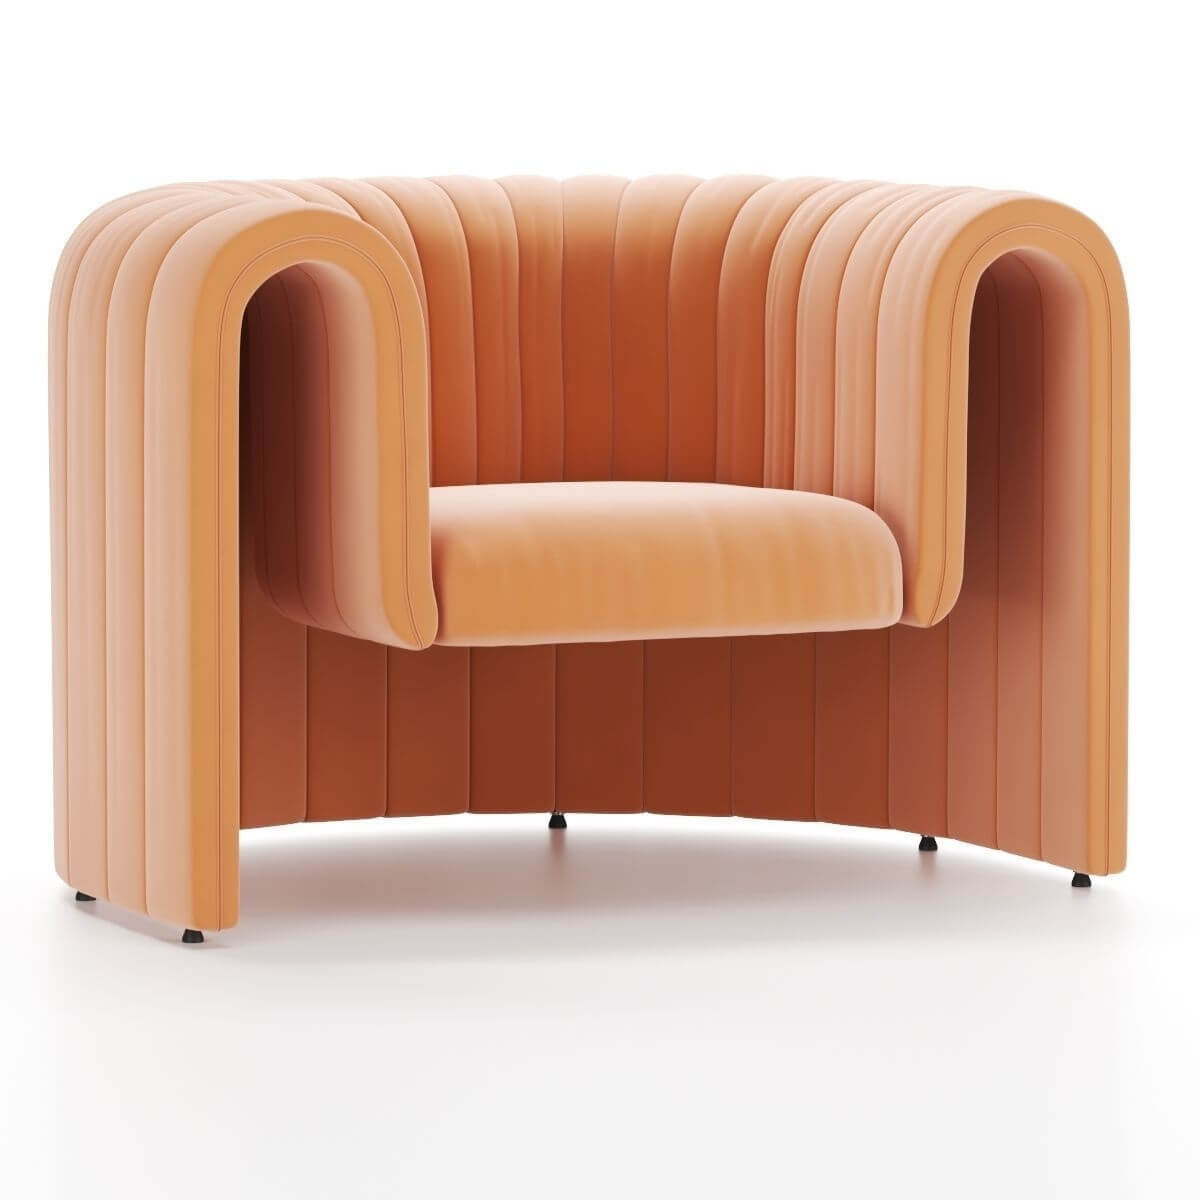 Designer-armchair-in-Australia-5